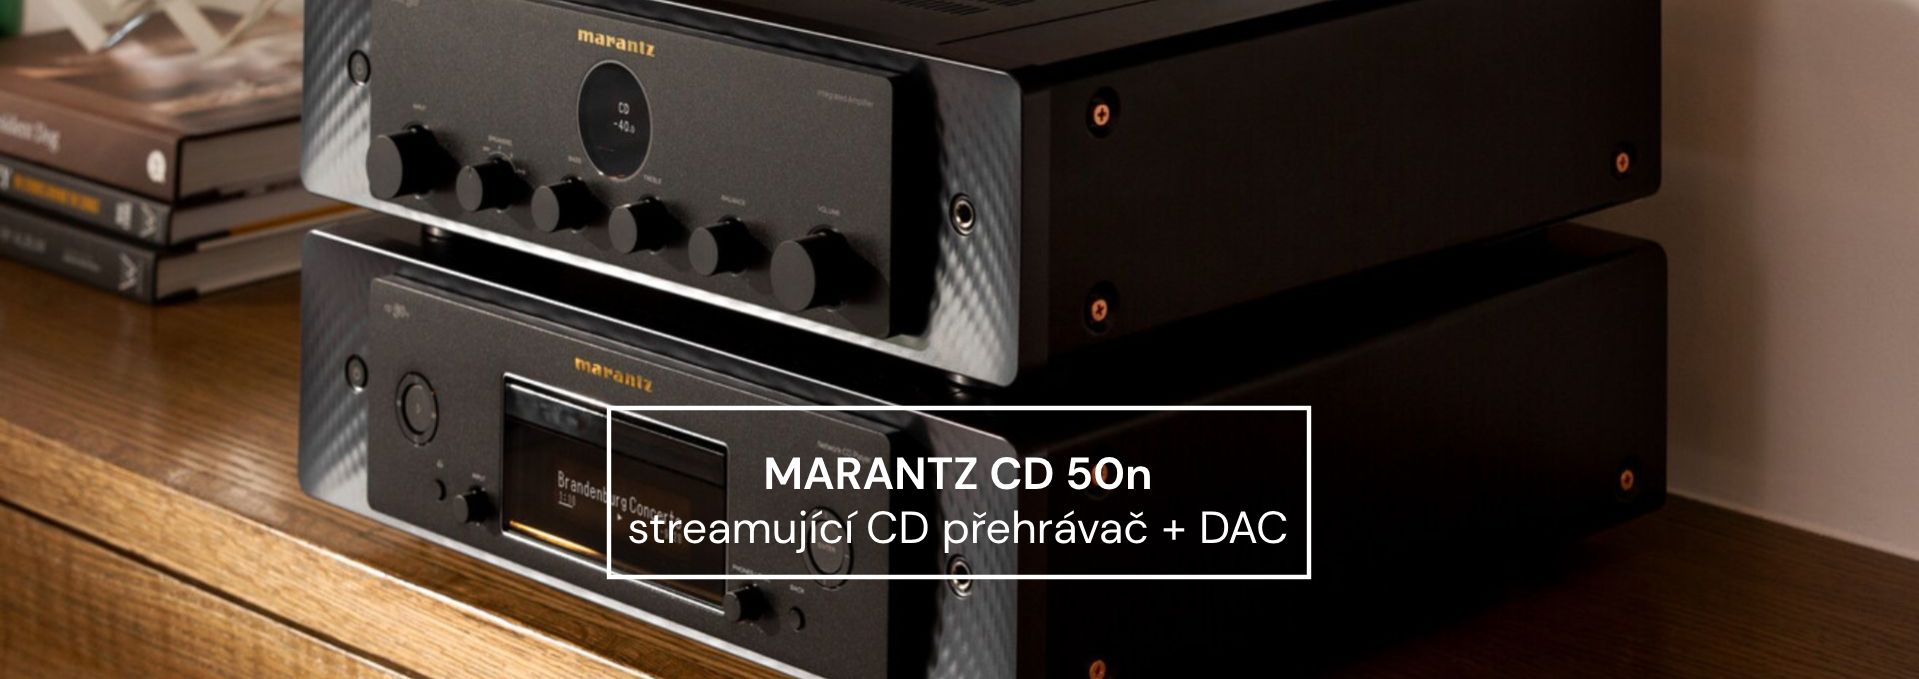 Marantz CD 50n